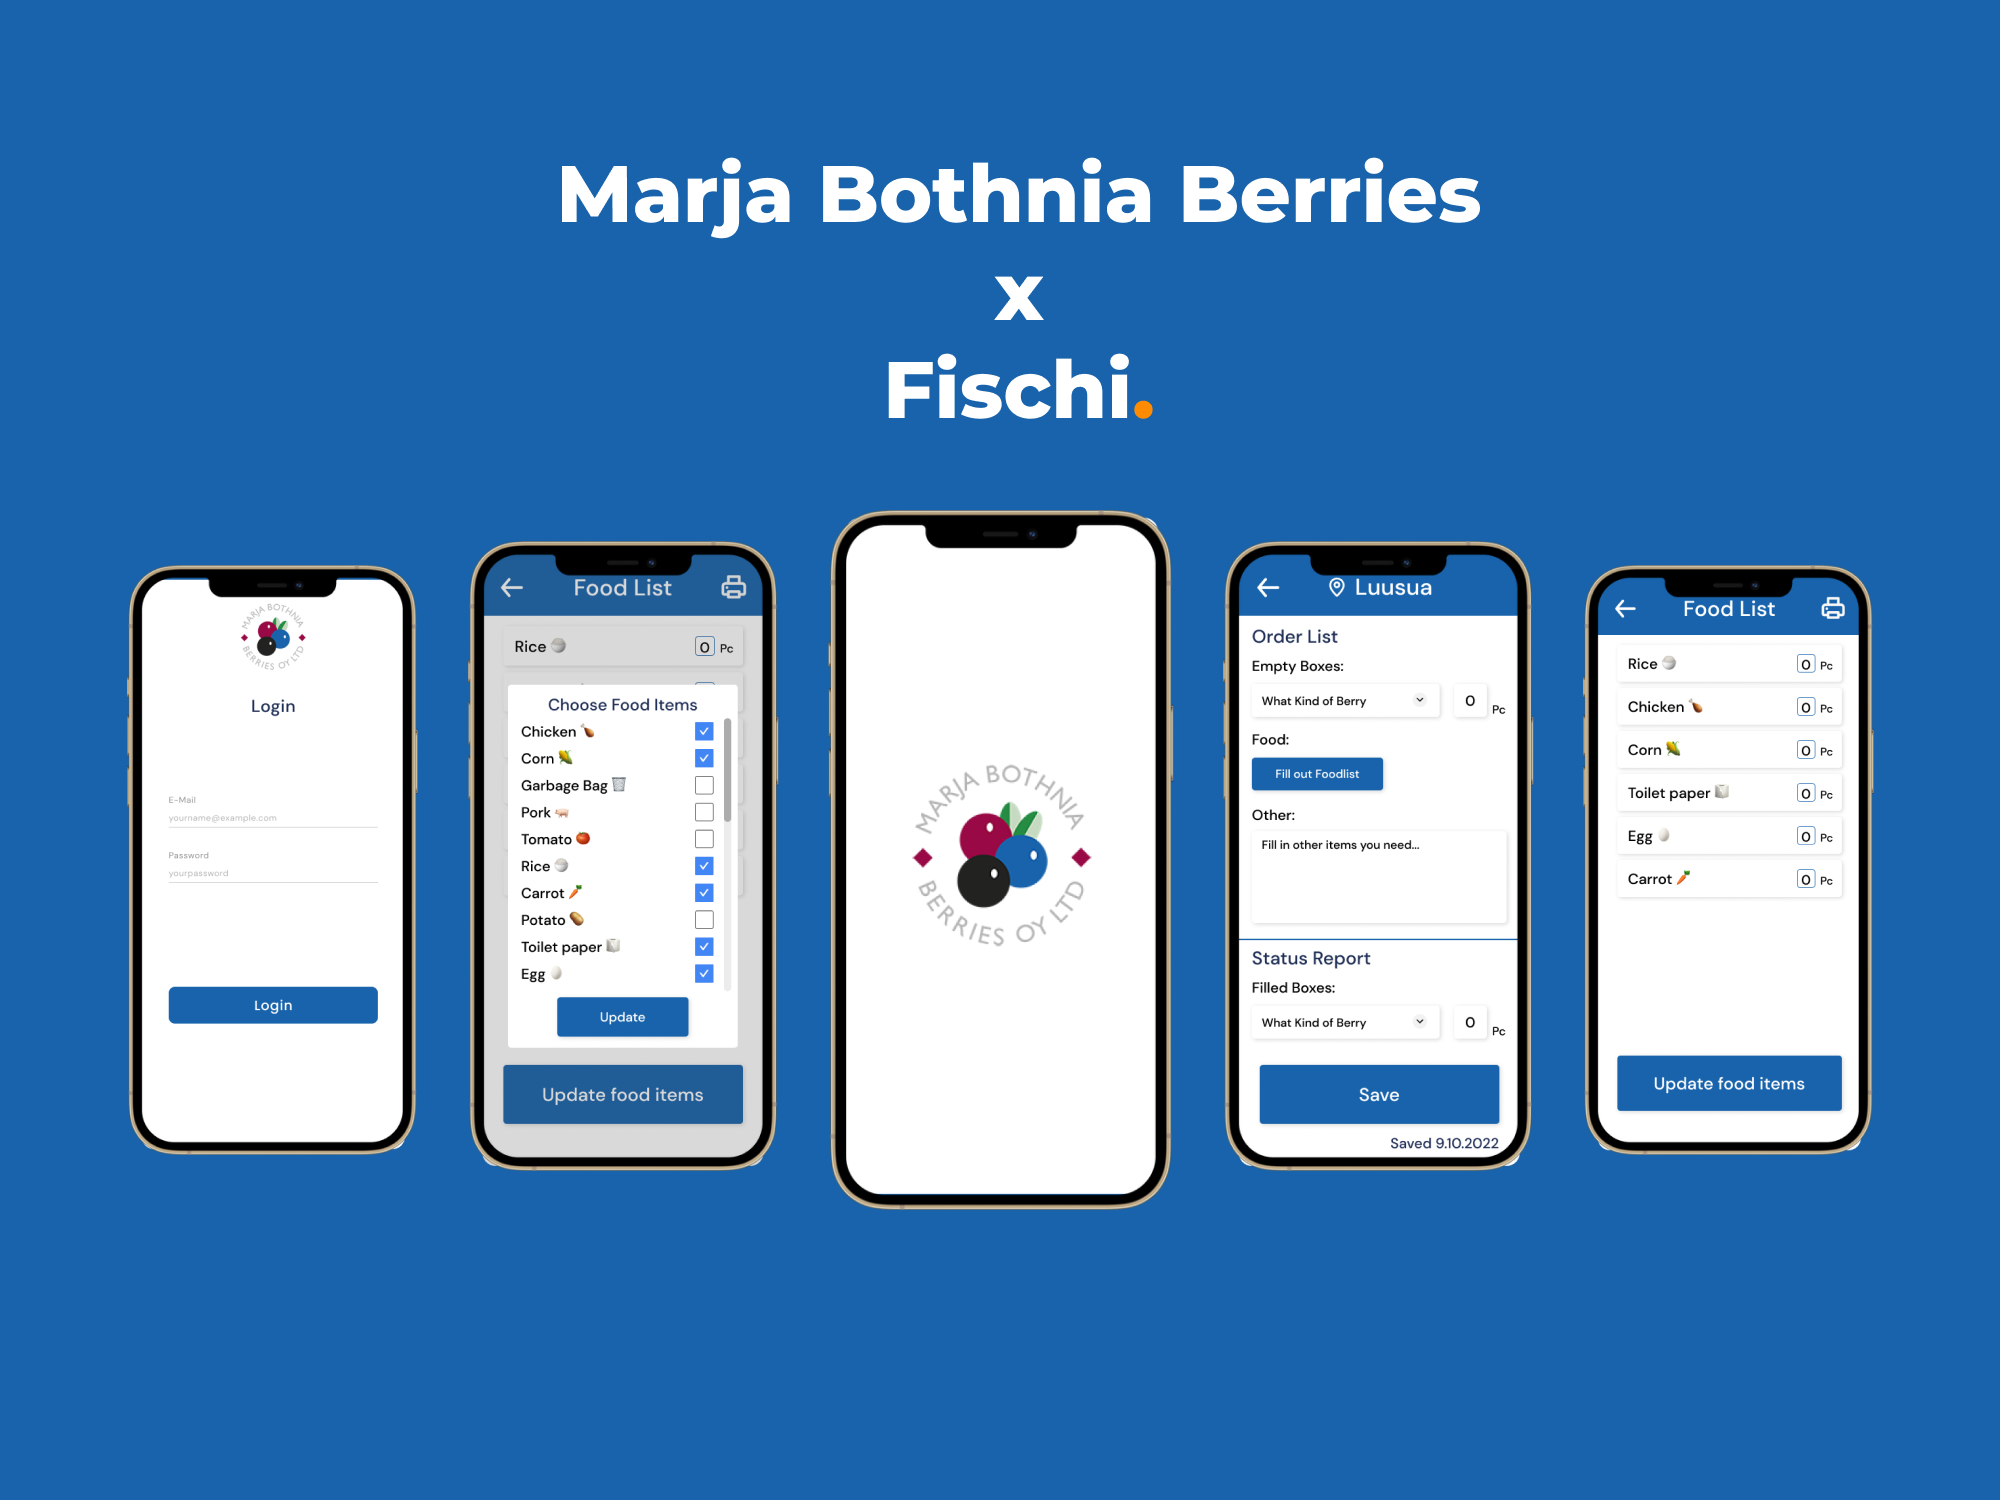 Marja Bothnia Berries